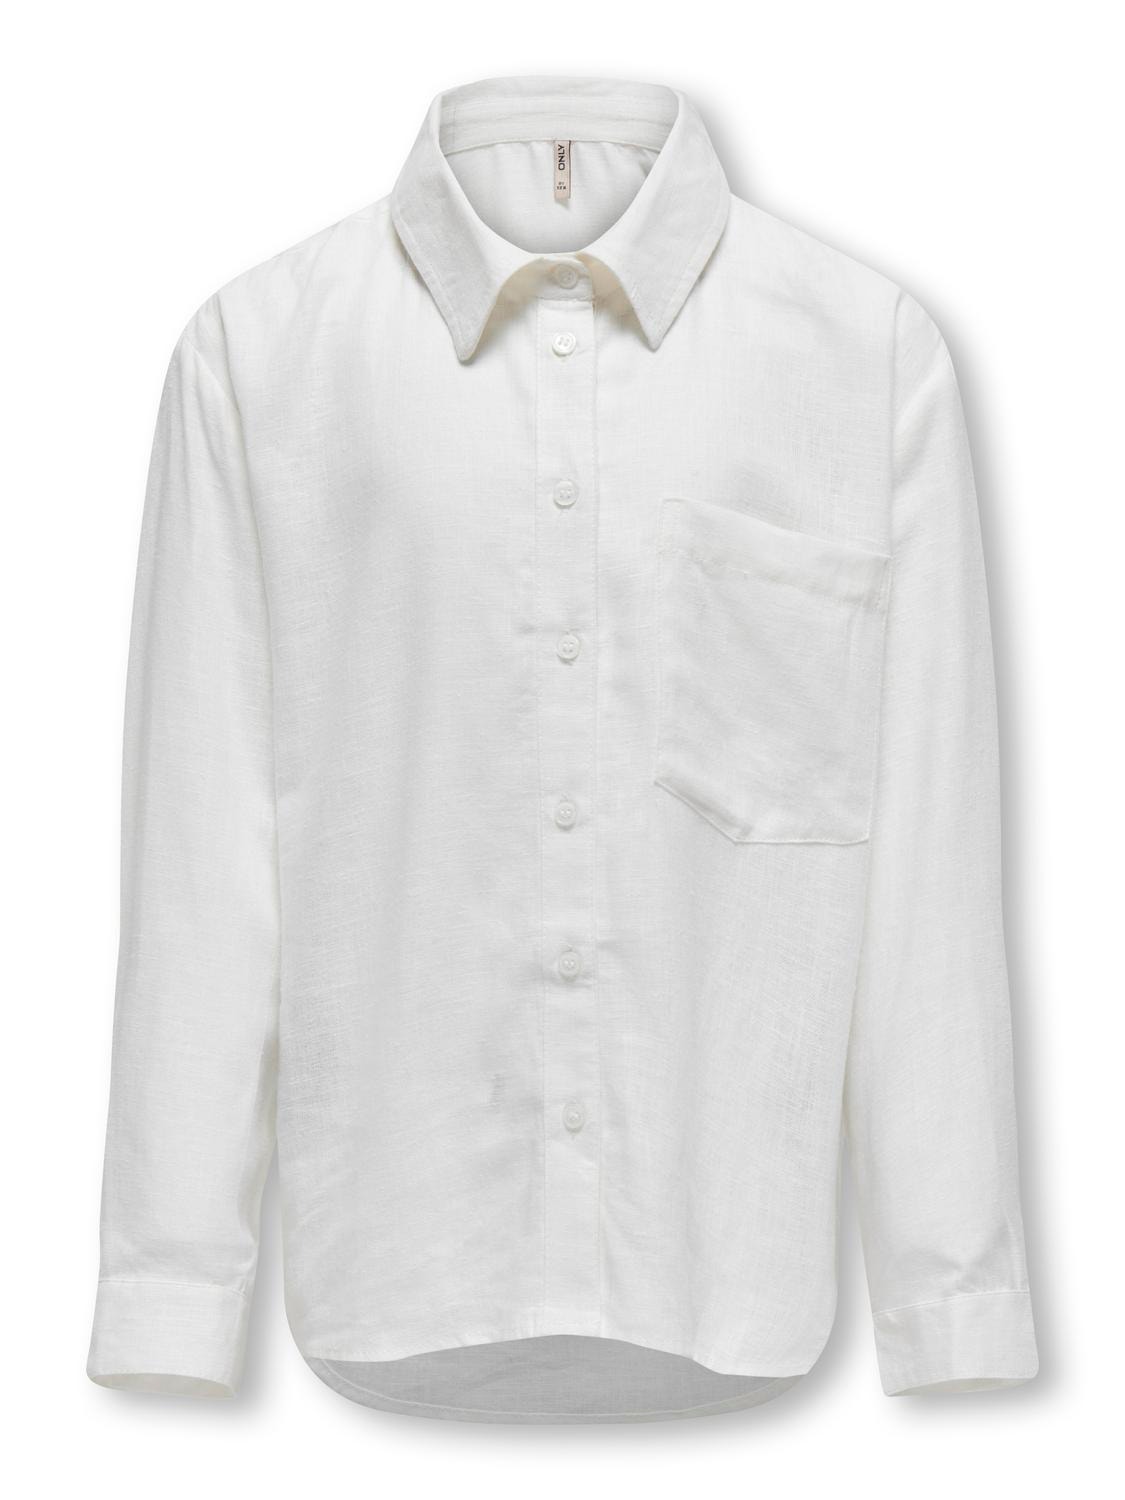 ONLY Normal geschnitten Hemdkragen Ärmelbündchen mit Knopf Hemd -Bright White - 15297052